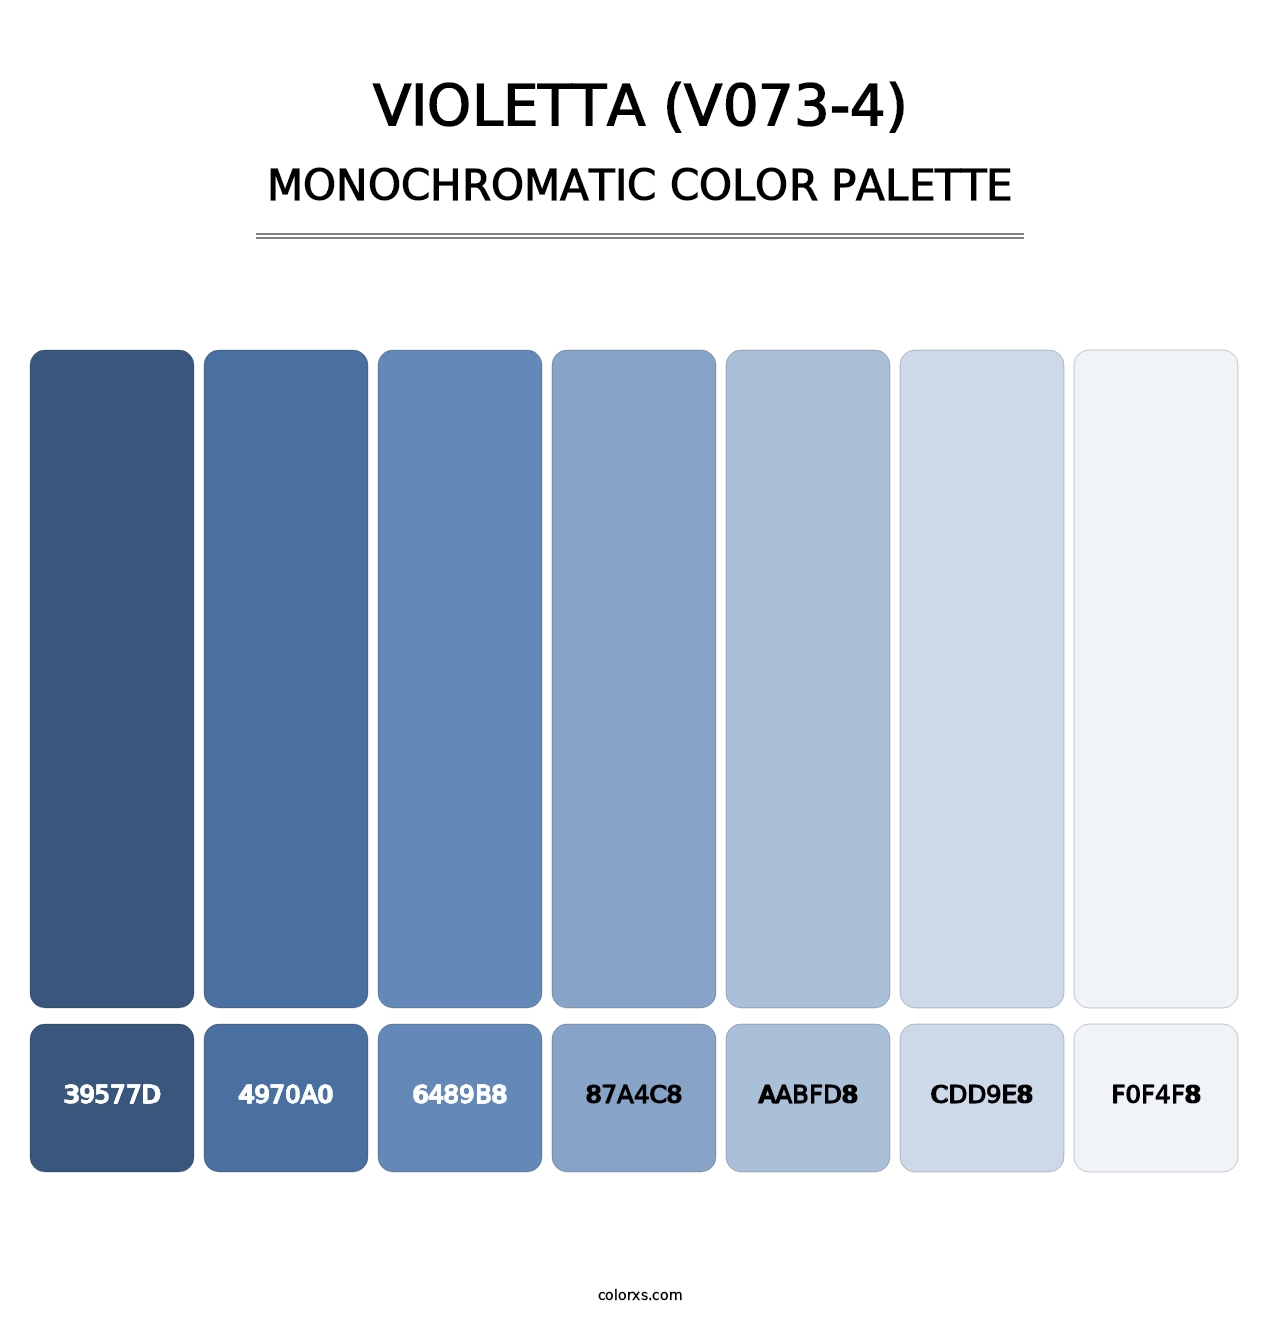 Violetta (V073-4) - Monochromatic Color Palette